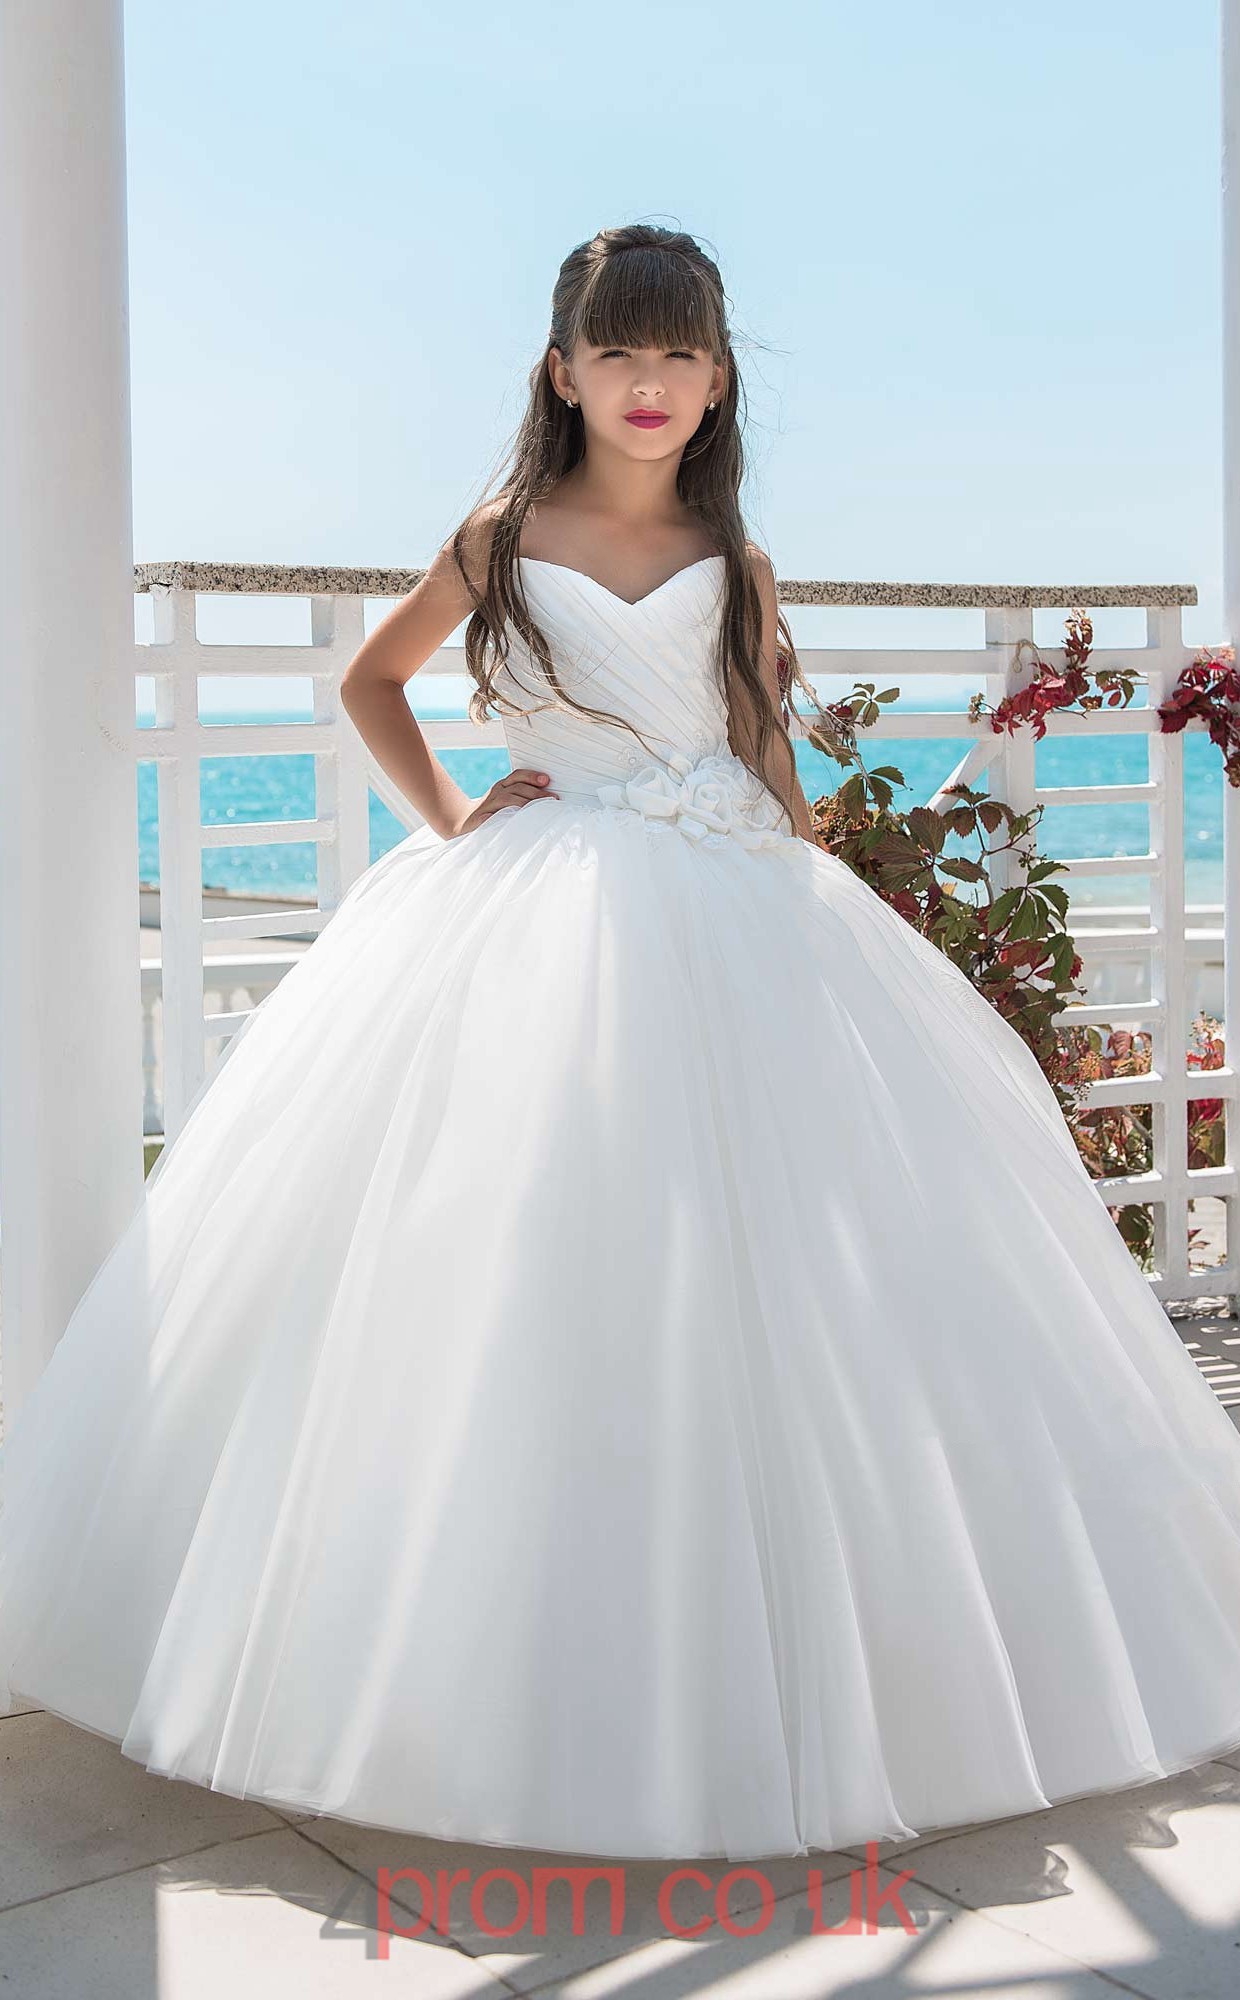 Sweetheart Sleeveless White Kids Prom Dresses CHK021 ...